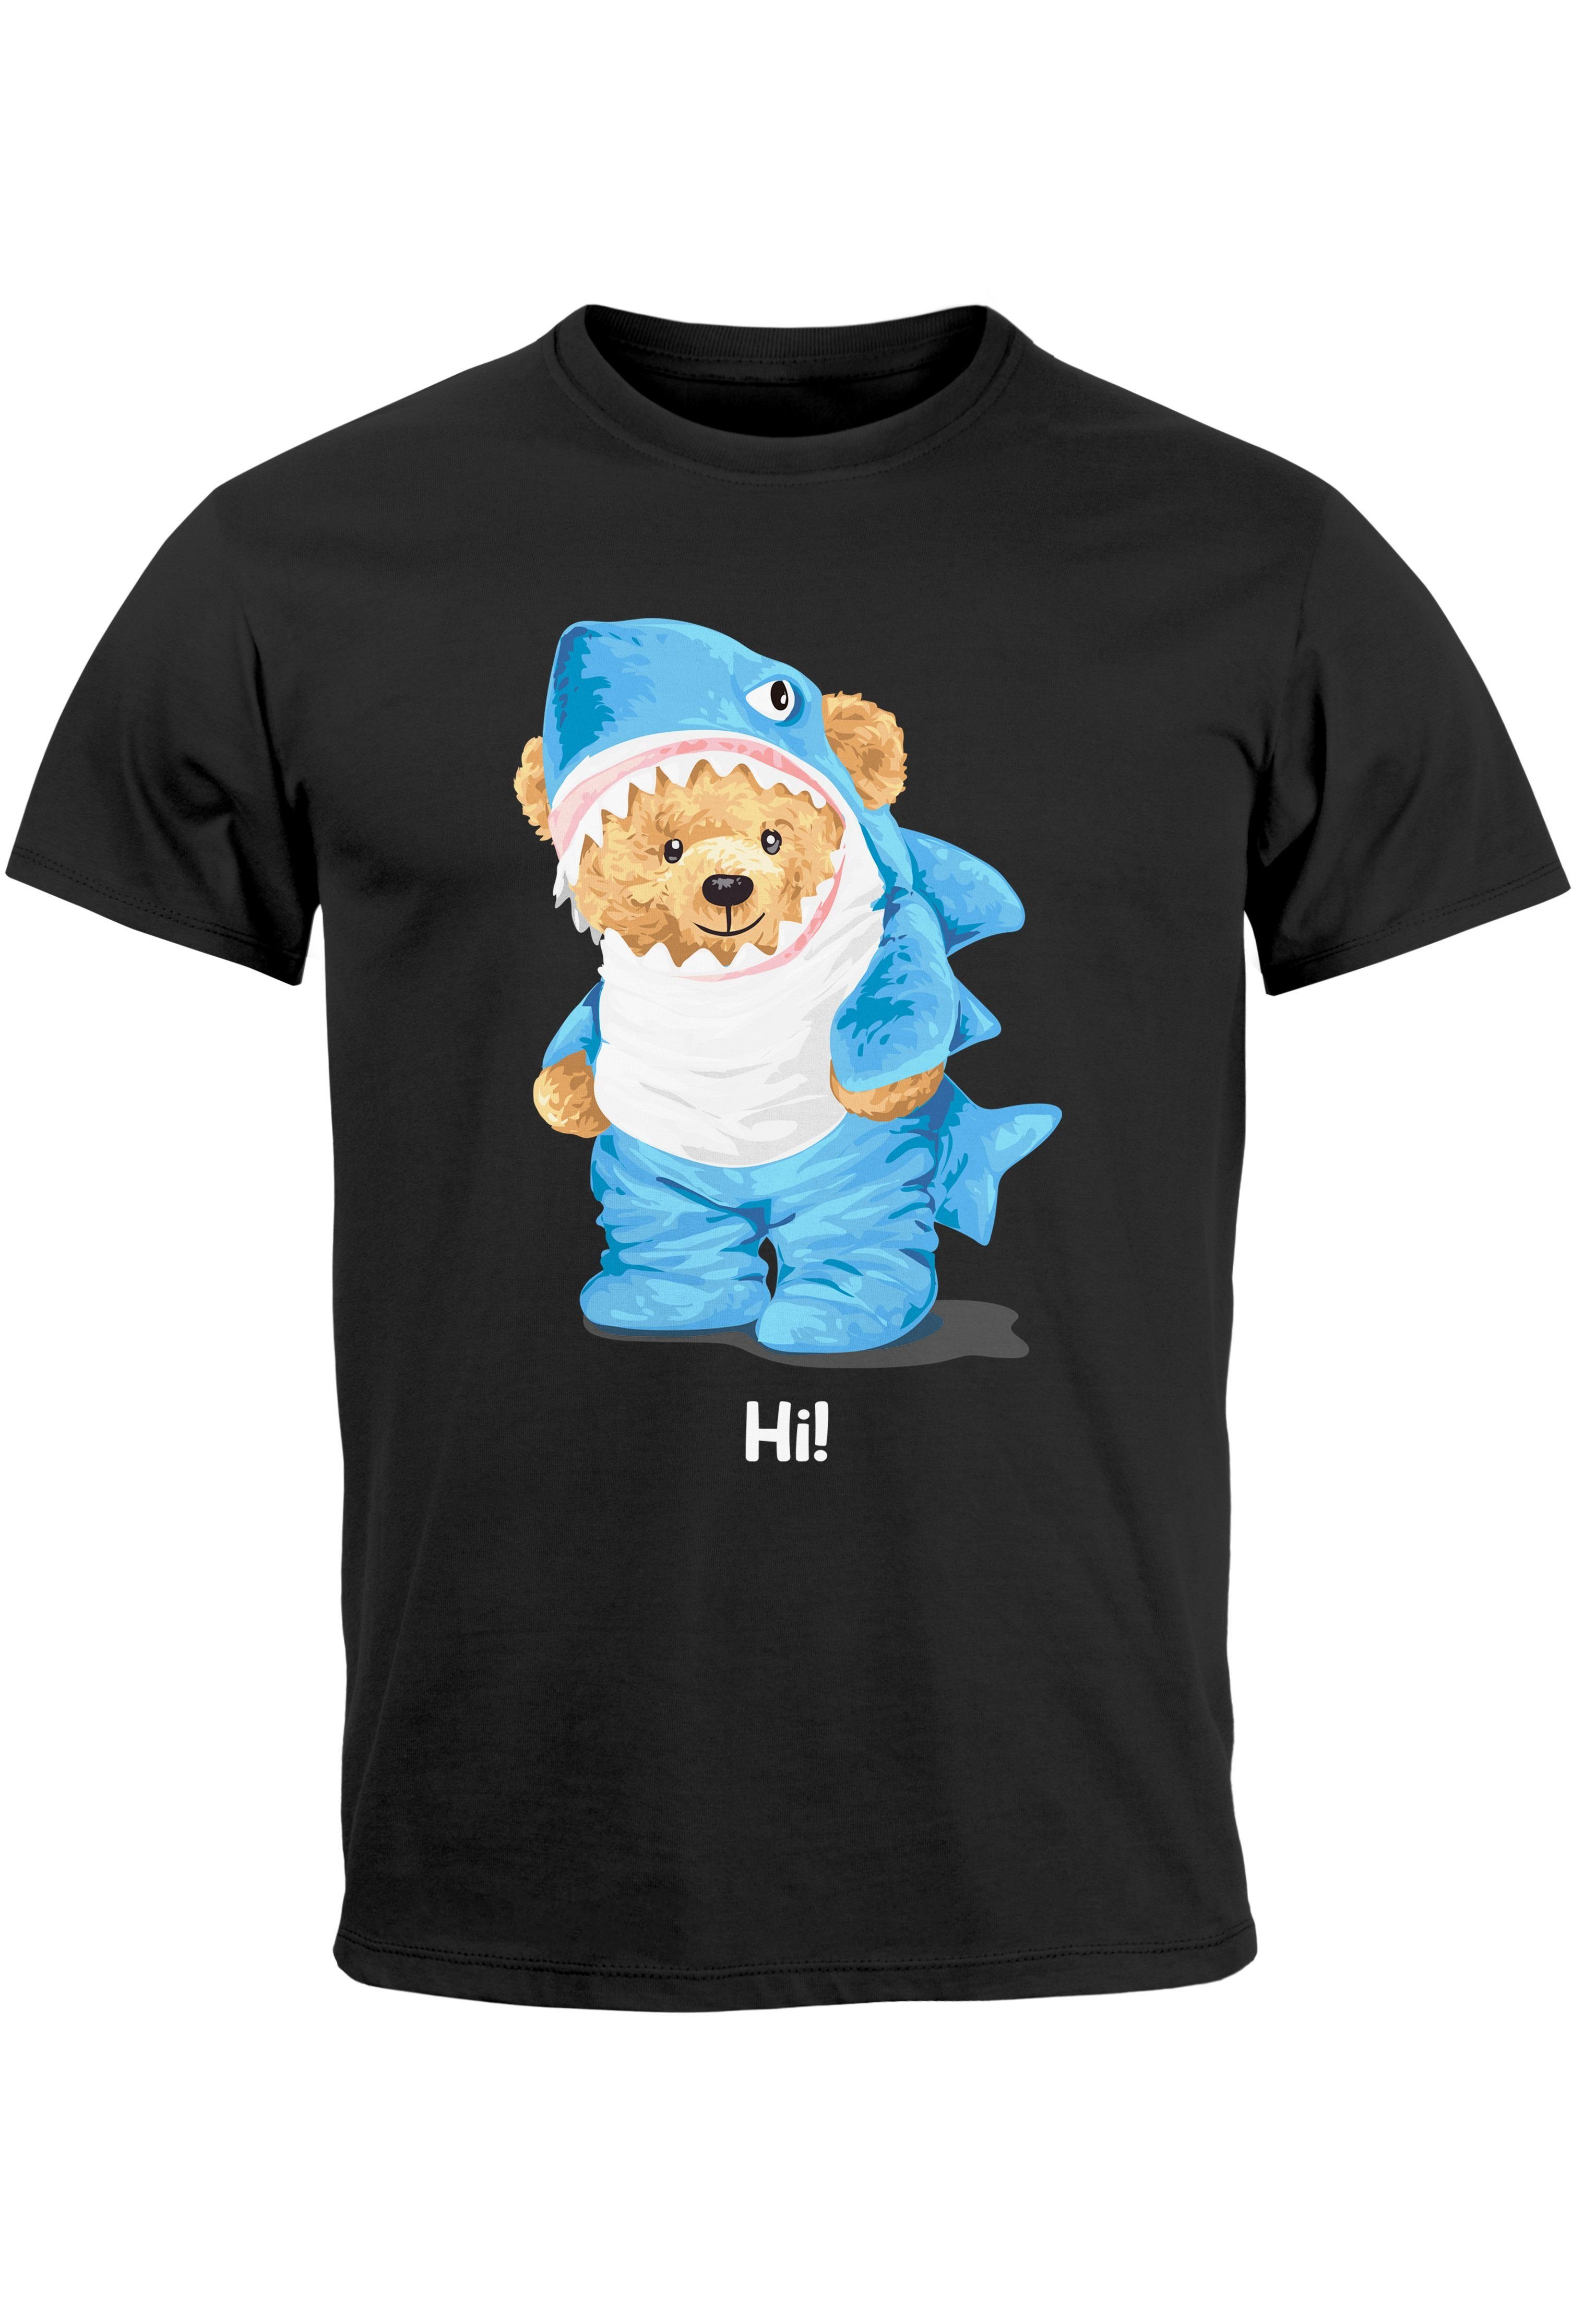 Neverless Print-Shirt Herren T-Shirt Hai Hi Teddy Bär Witz Parodie Printshirt Aufdruck Fashi mit Print schwarz